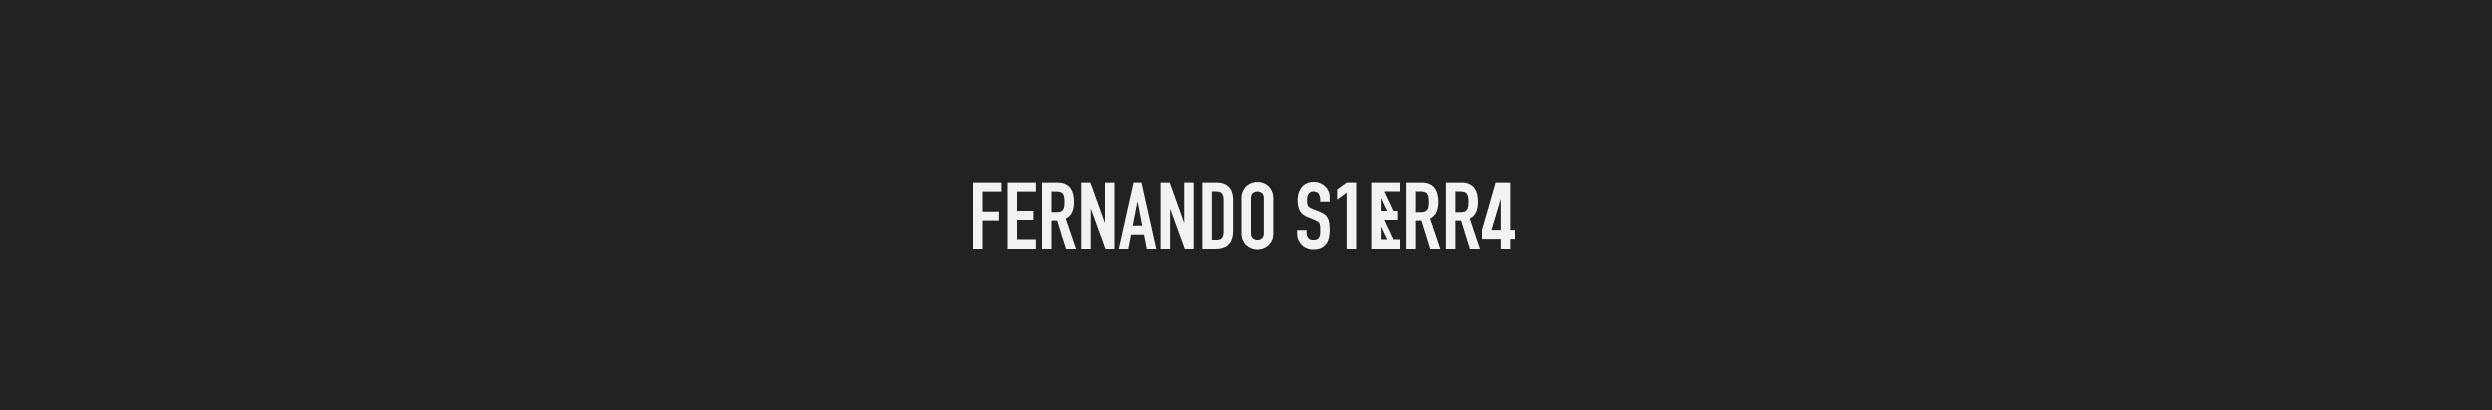 Banner de perfil de Fernando Sierra